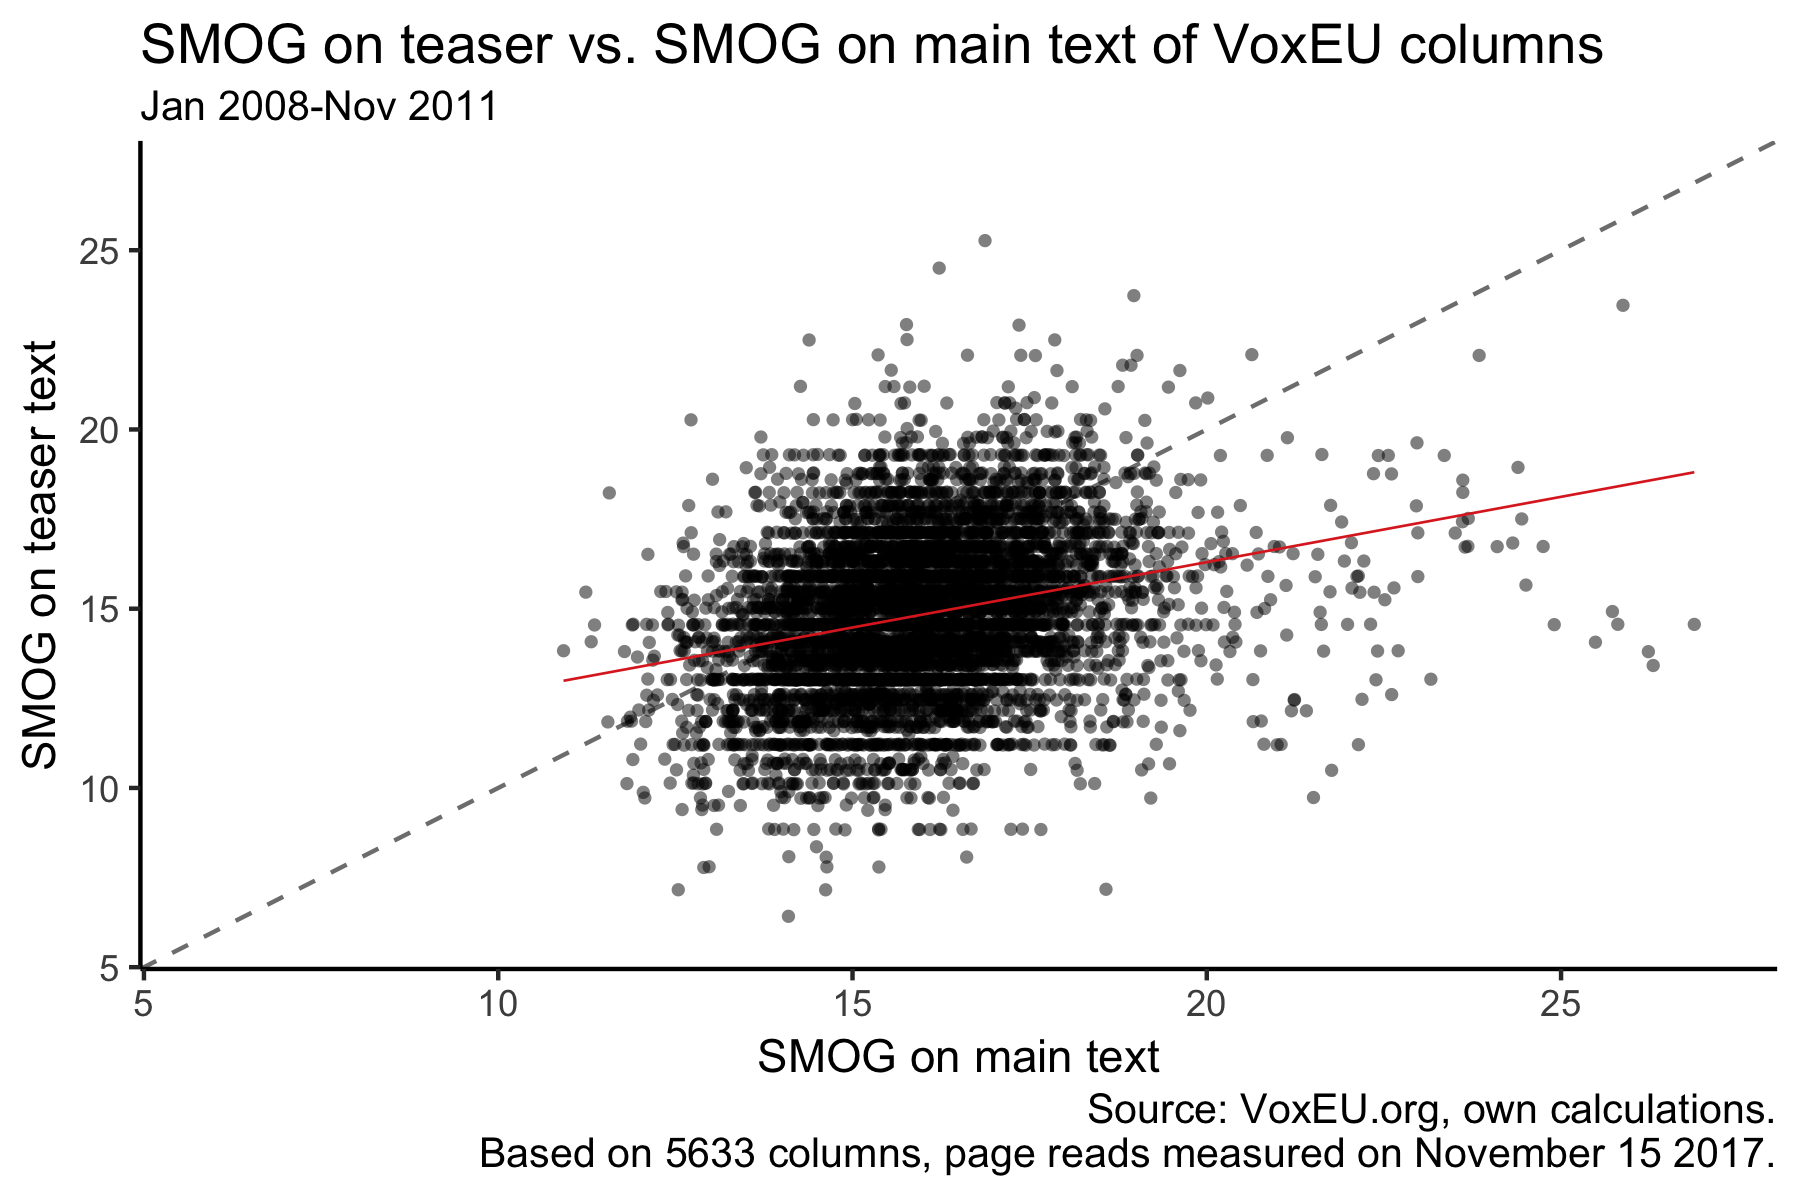 SMOG values of teaser vs. main part of VoxEU column